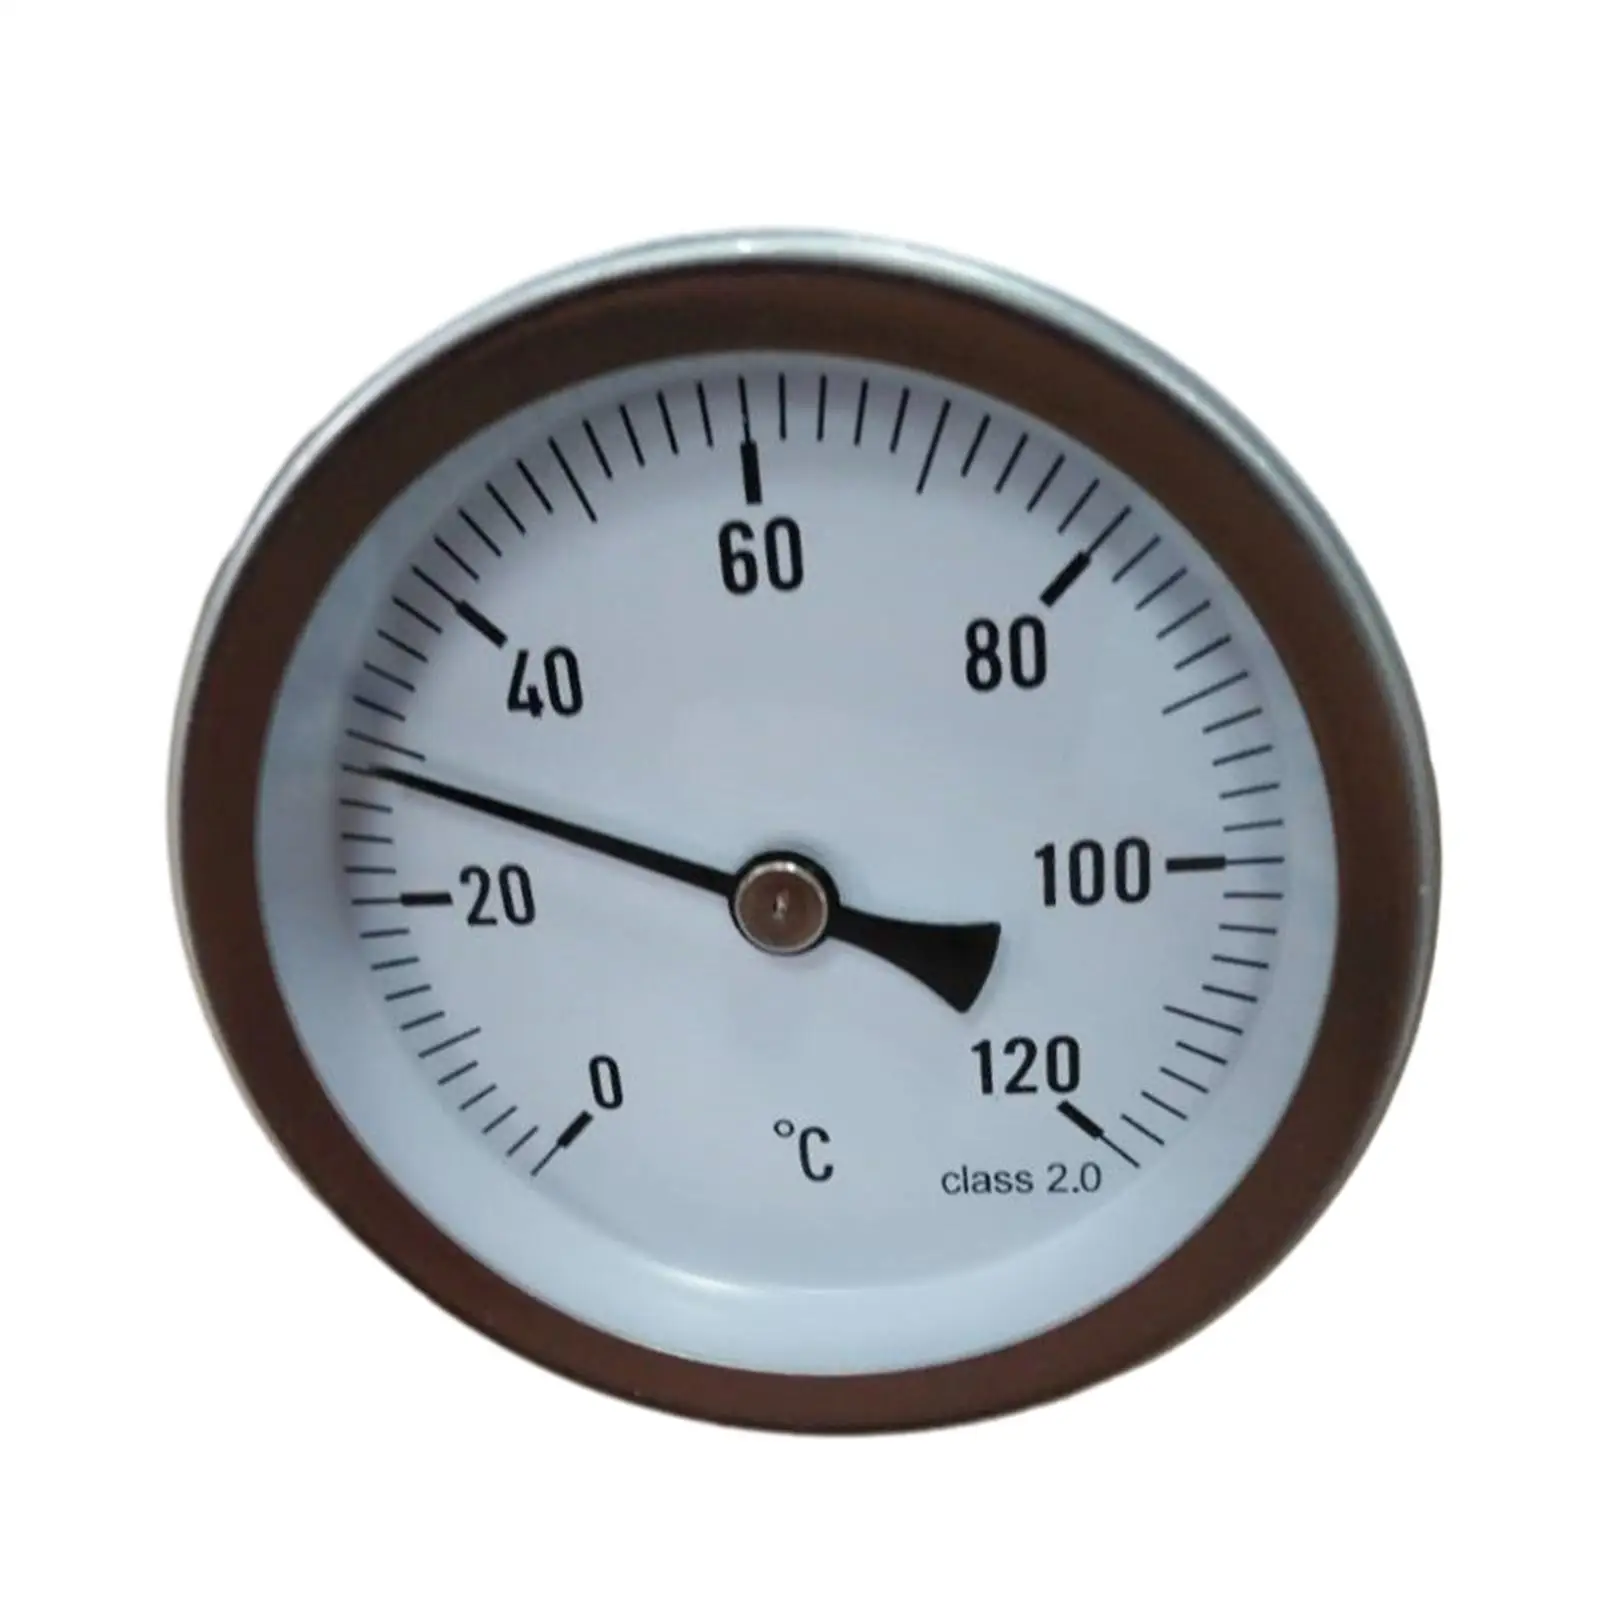 

Измеритель температуры воды, прочный термометр с трубкой для горячей воды с четкой шкалой температуры, термометр